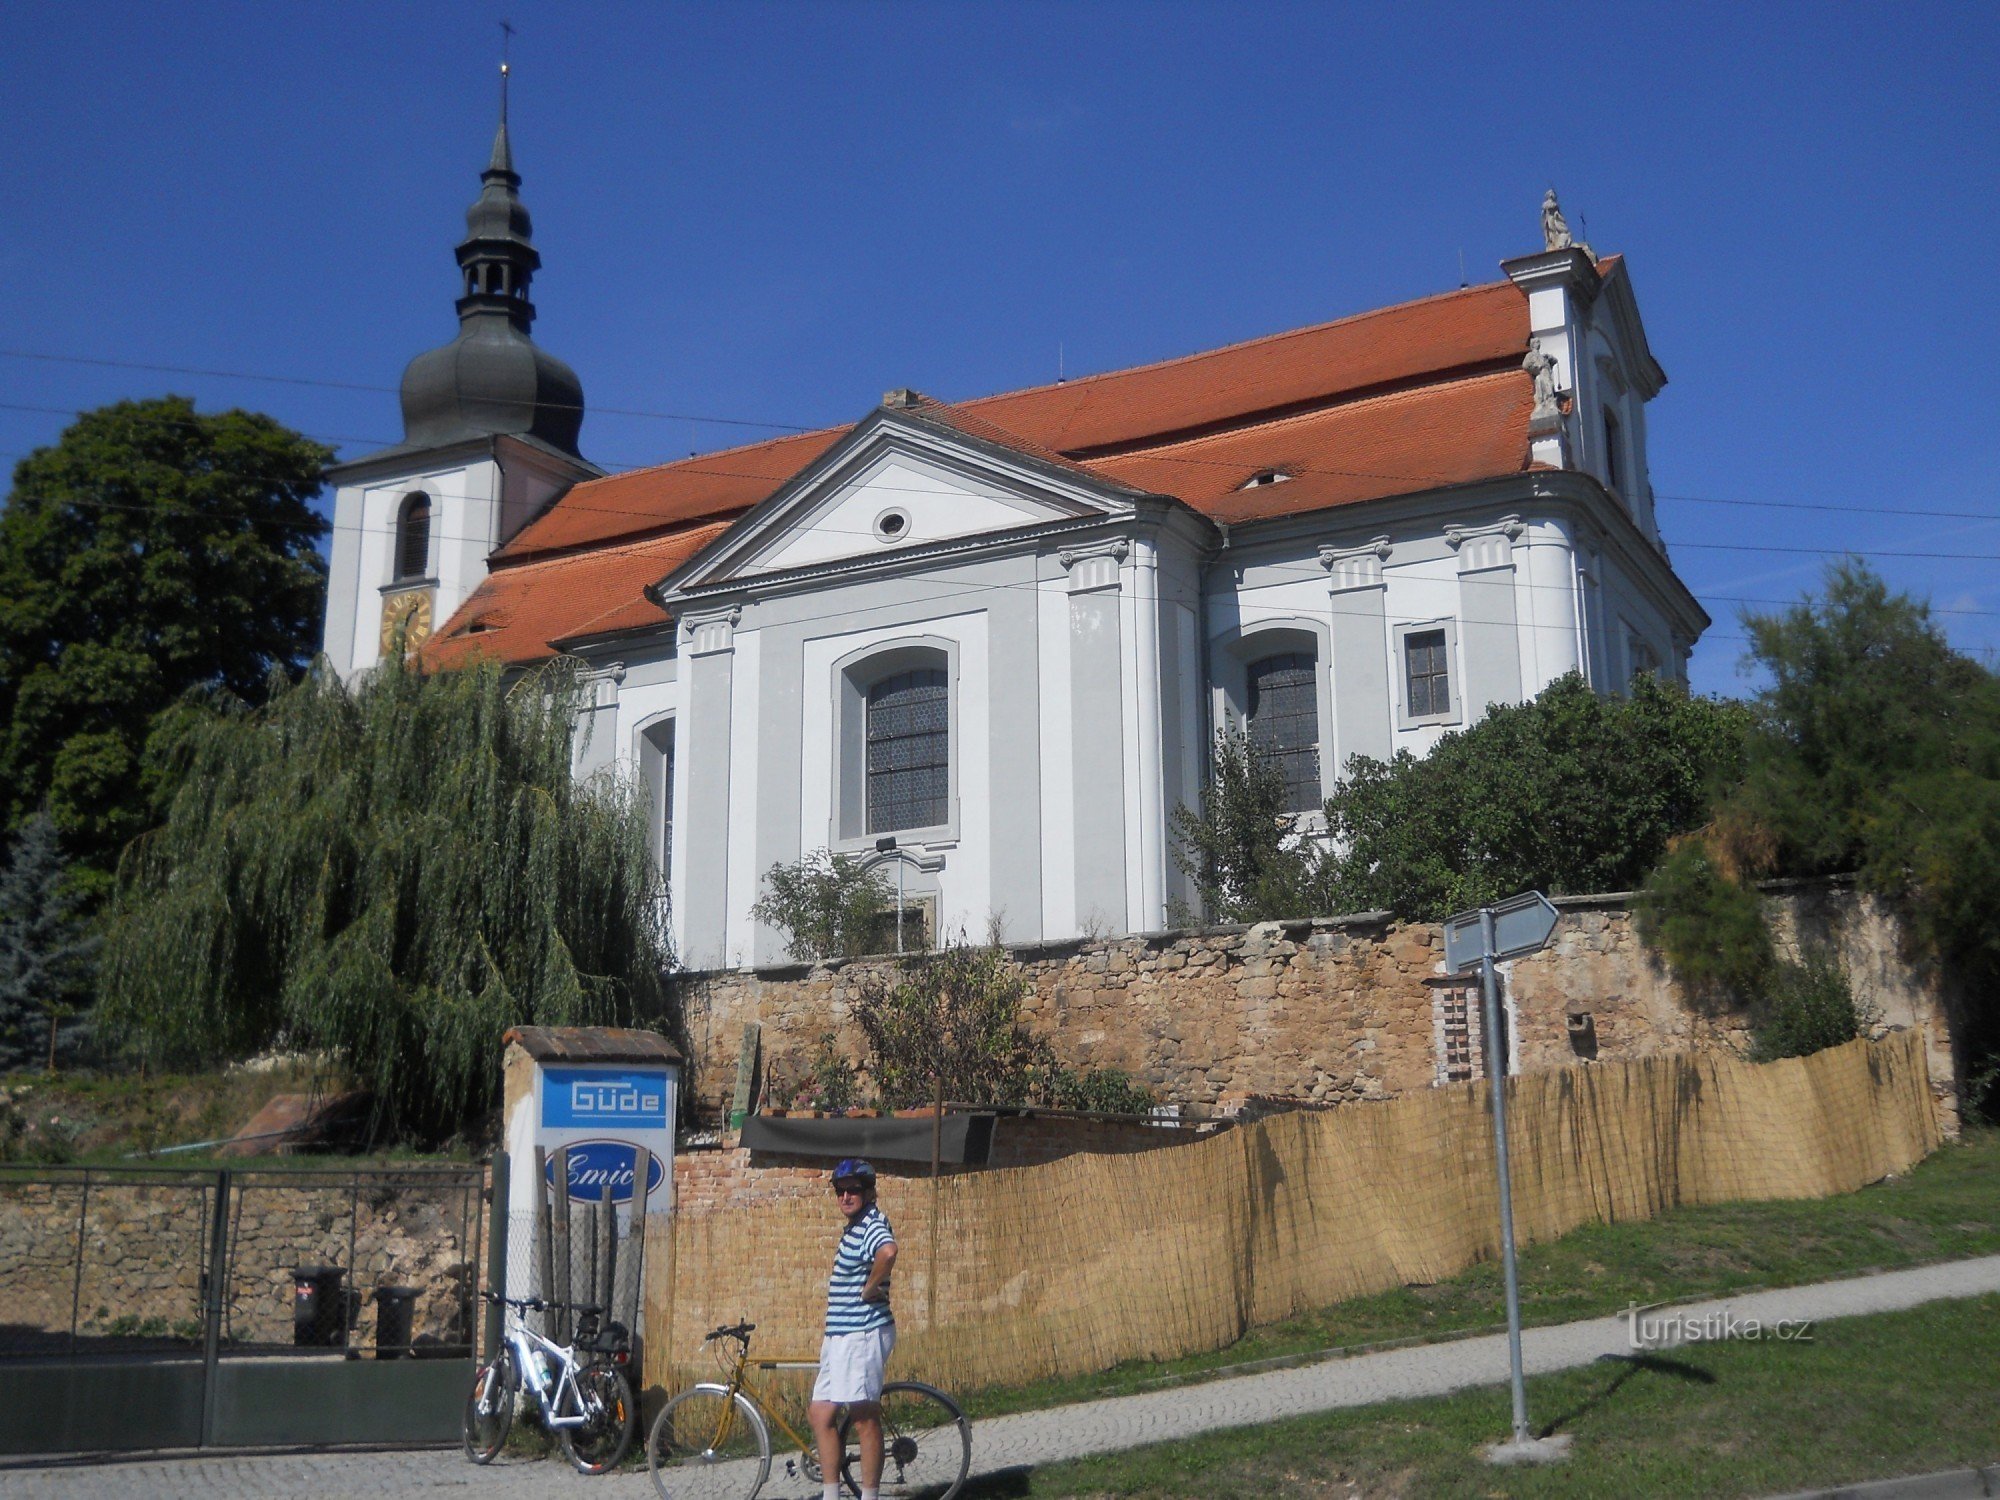 Vejprnice - barokna crkva sv. Vojtěch od 1722. - 1726. godine